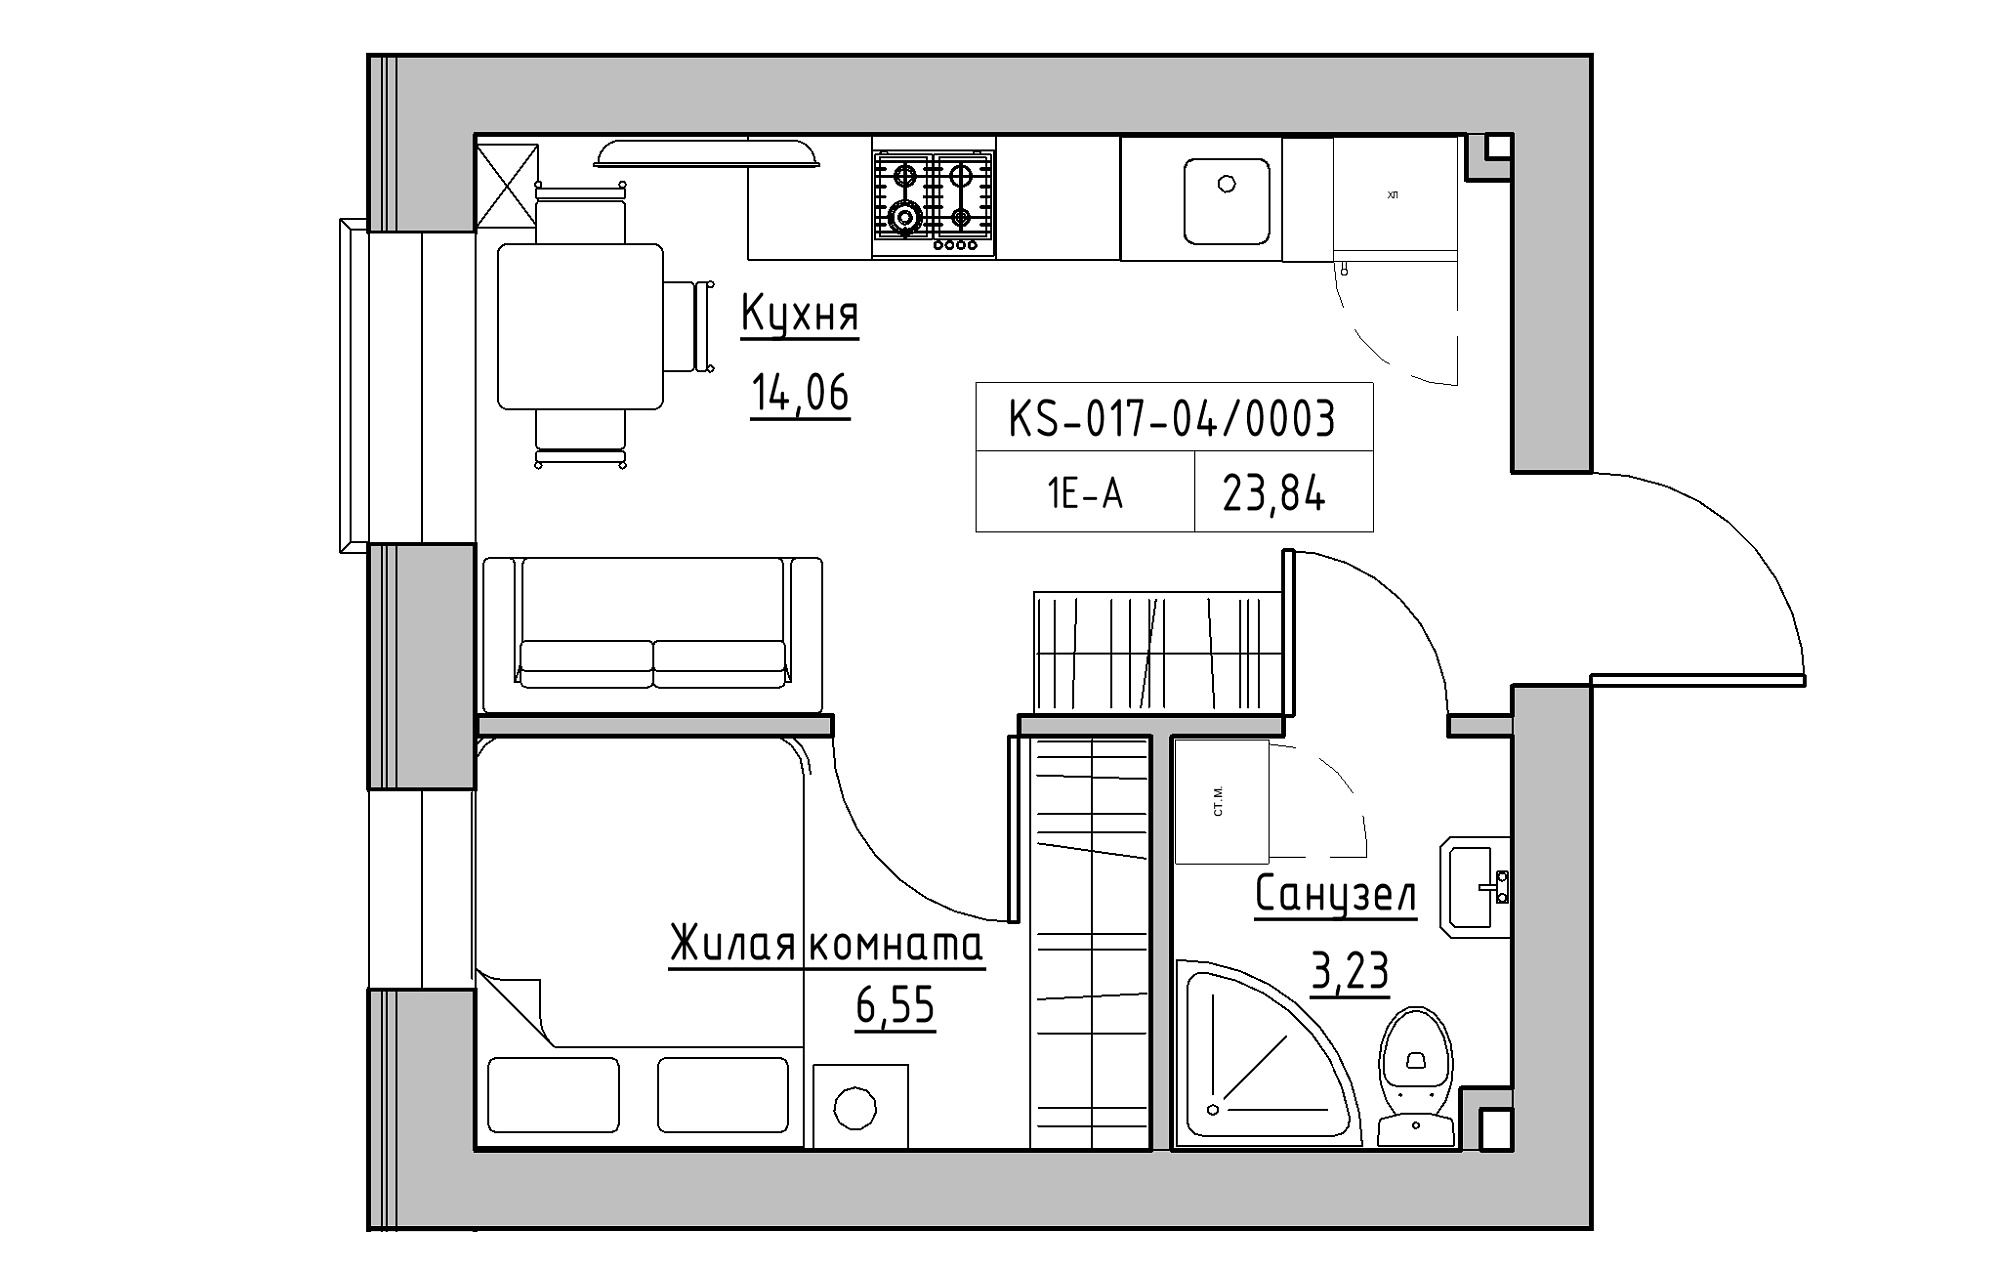 Планування 1-к квартира площею 23.84м2, KS-017-04/0003.